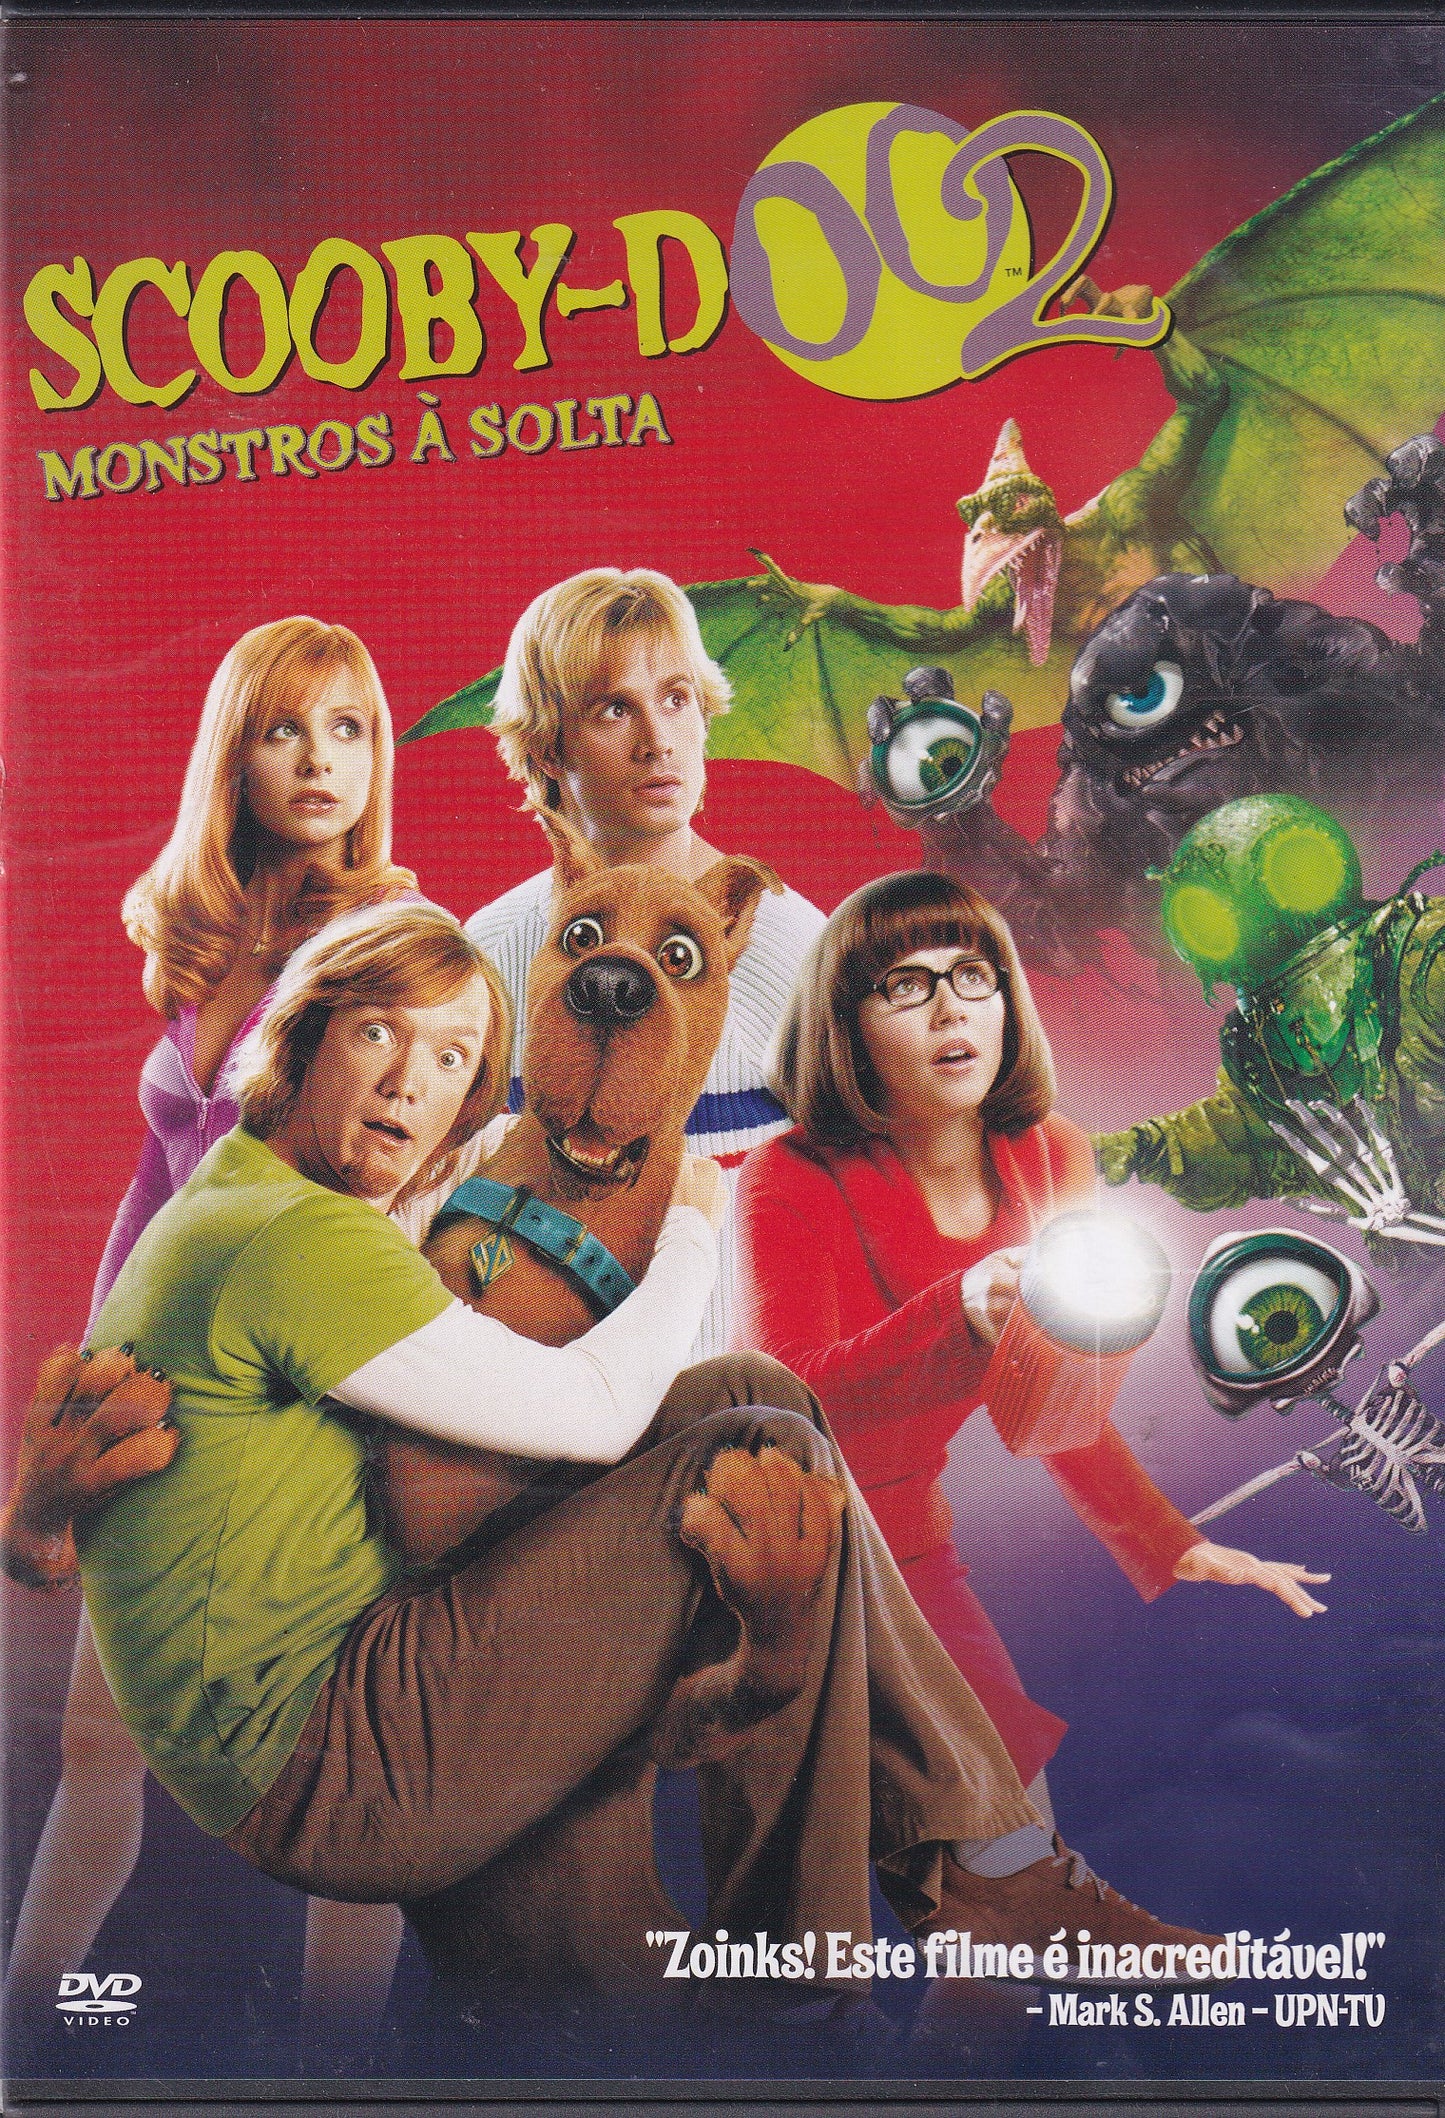 DVD SCOOBY-DOO 2: MONTROS À SOLTA - USADO